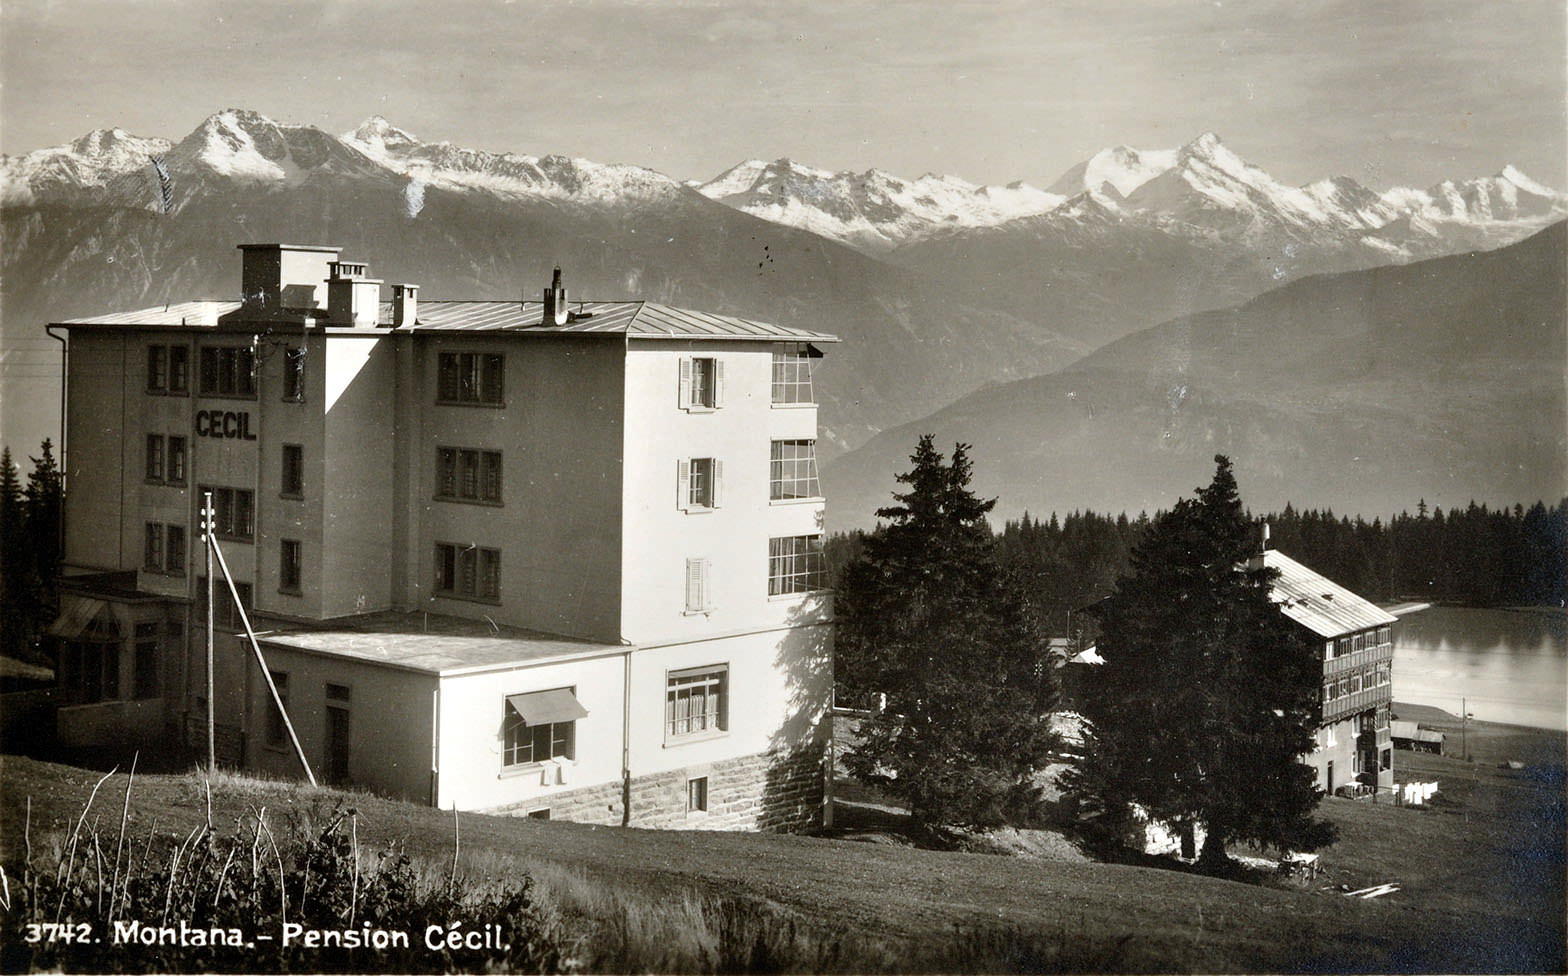  Abb. 6  Montana - Pension Cécil, c.a. 1936, Ansichtskarte , ungelaufen ©Zentrum Paul Klee, Bern, Schenkung Familie Klee Bildarchiv 